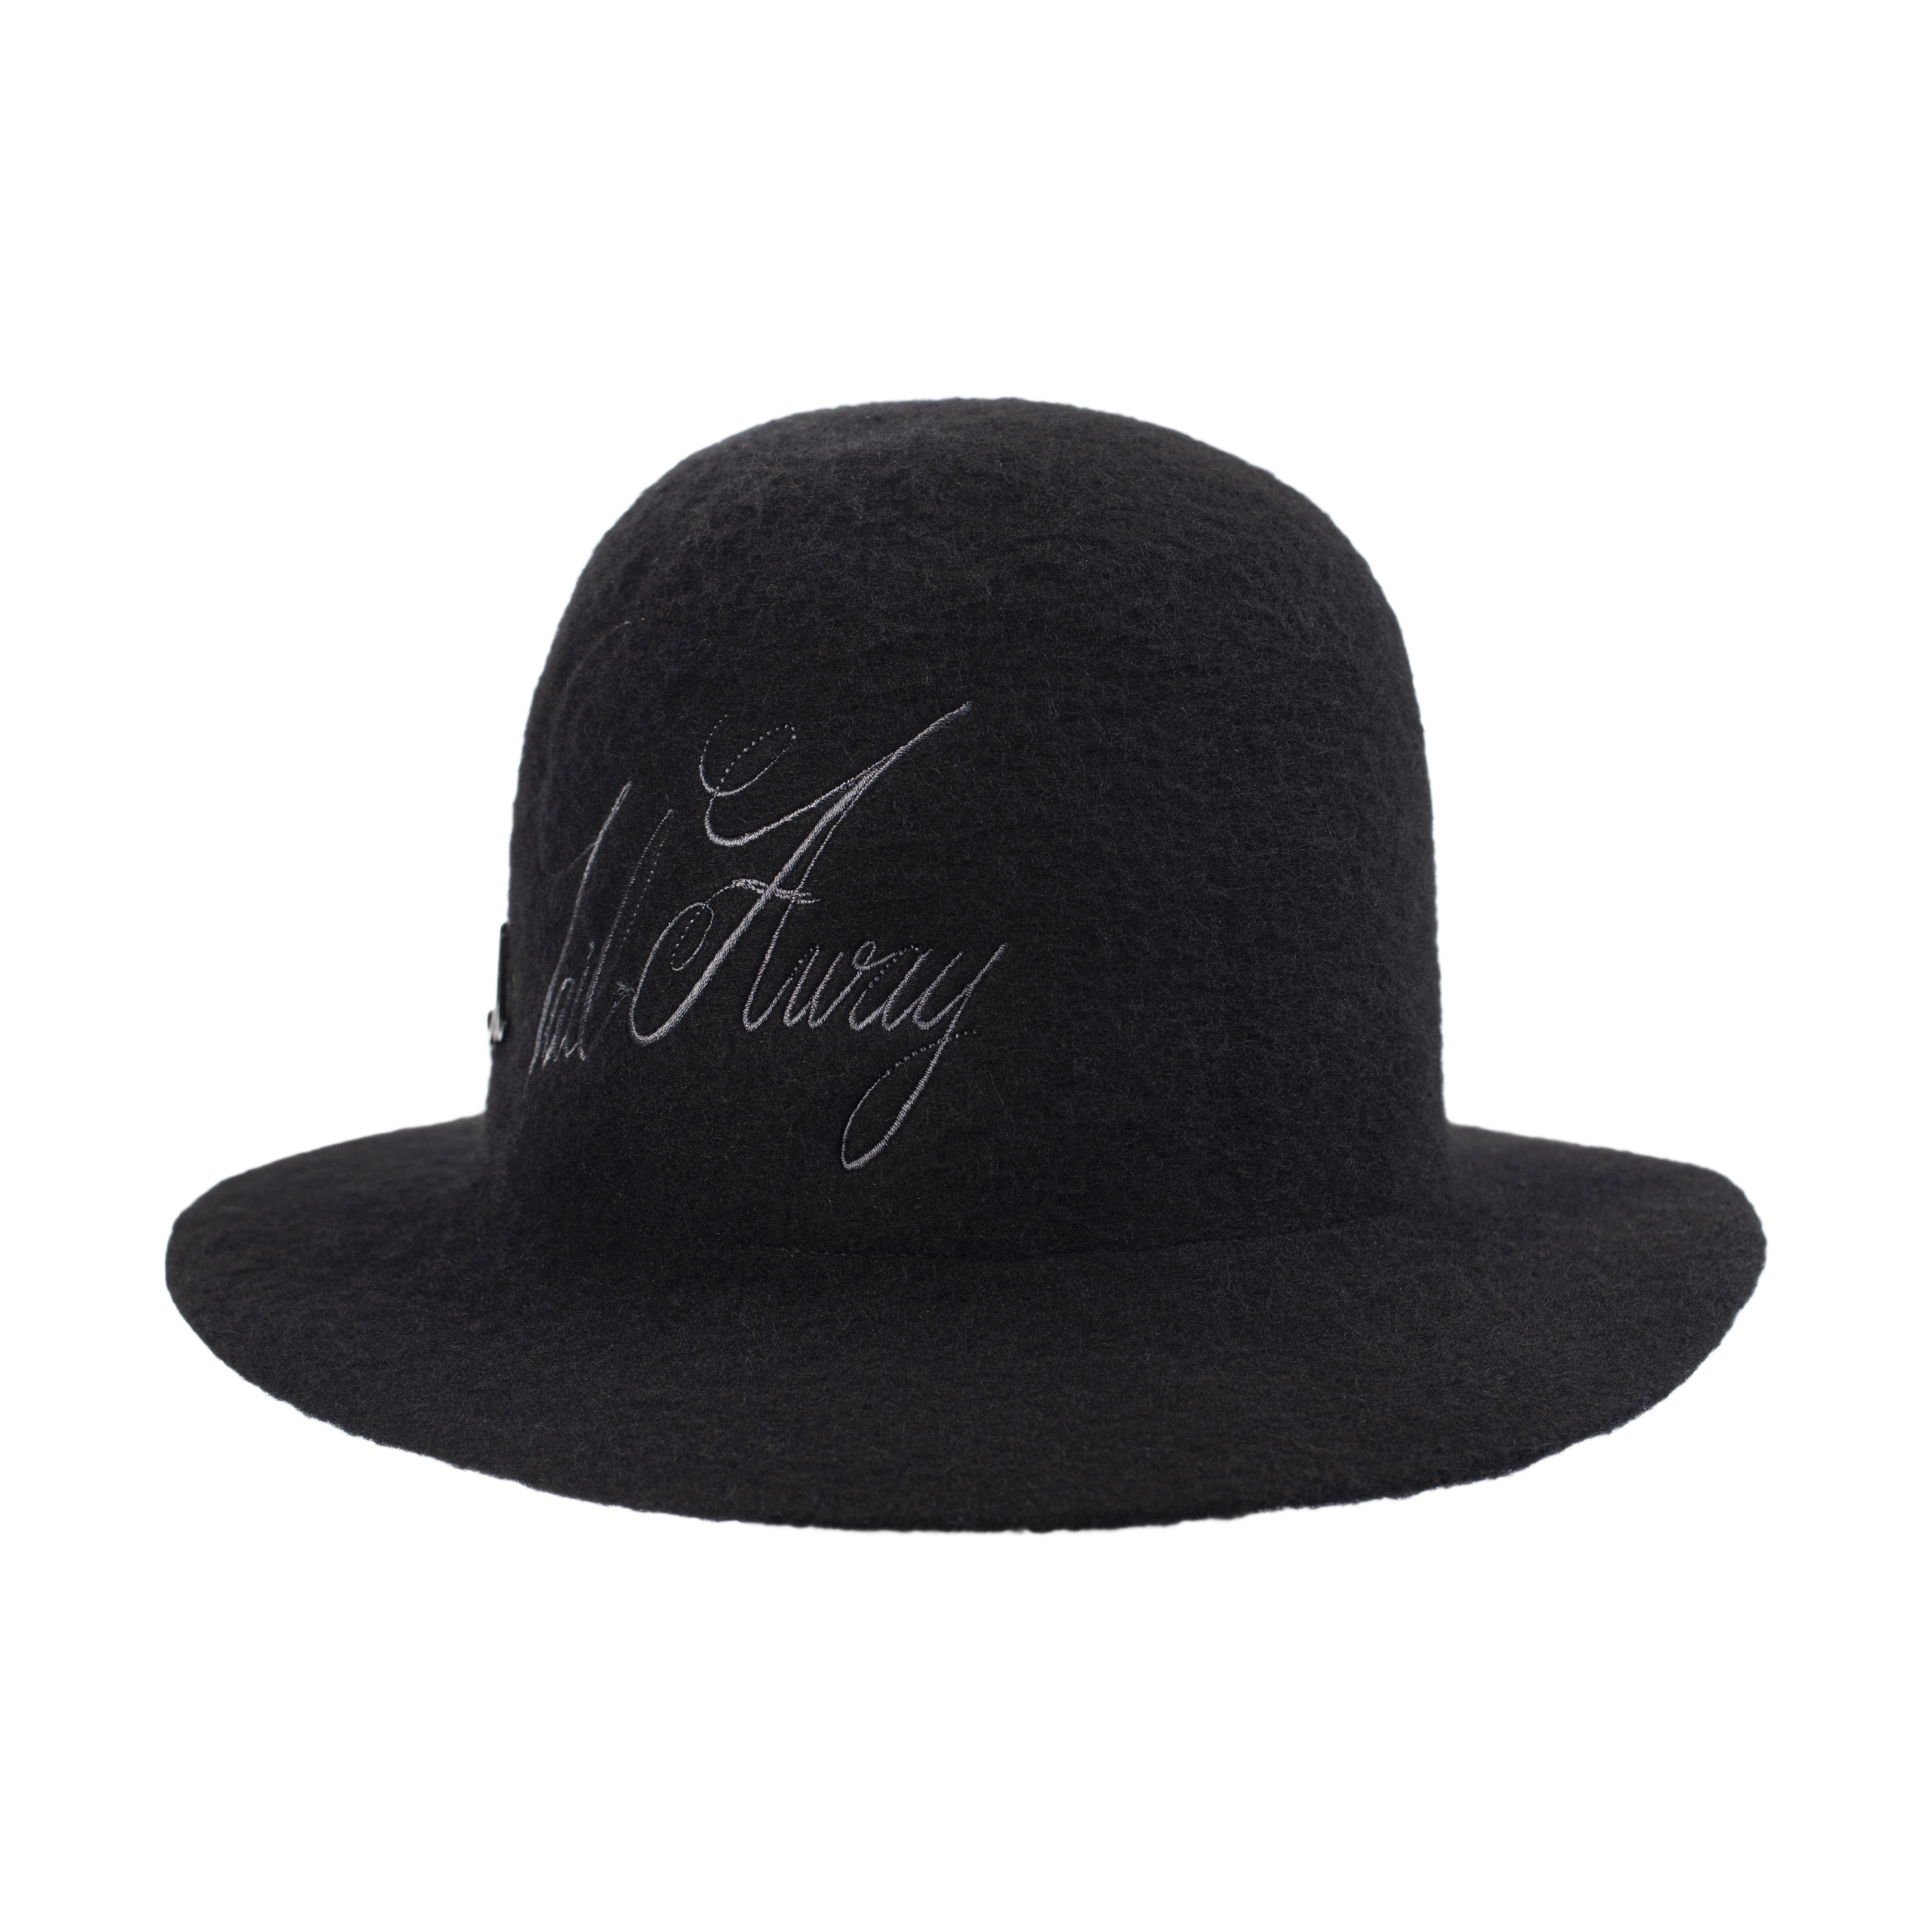 Шерстяная шляпа с вышитым логотипом Junya Watanabe WH-K606-051-1, размер 3 - фото 3